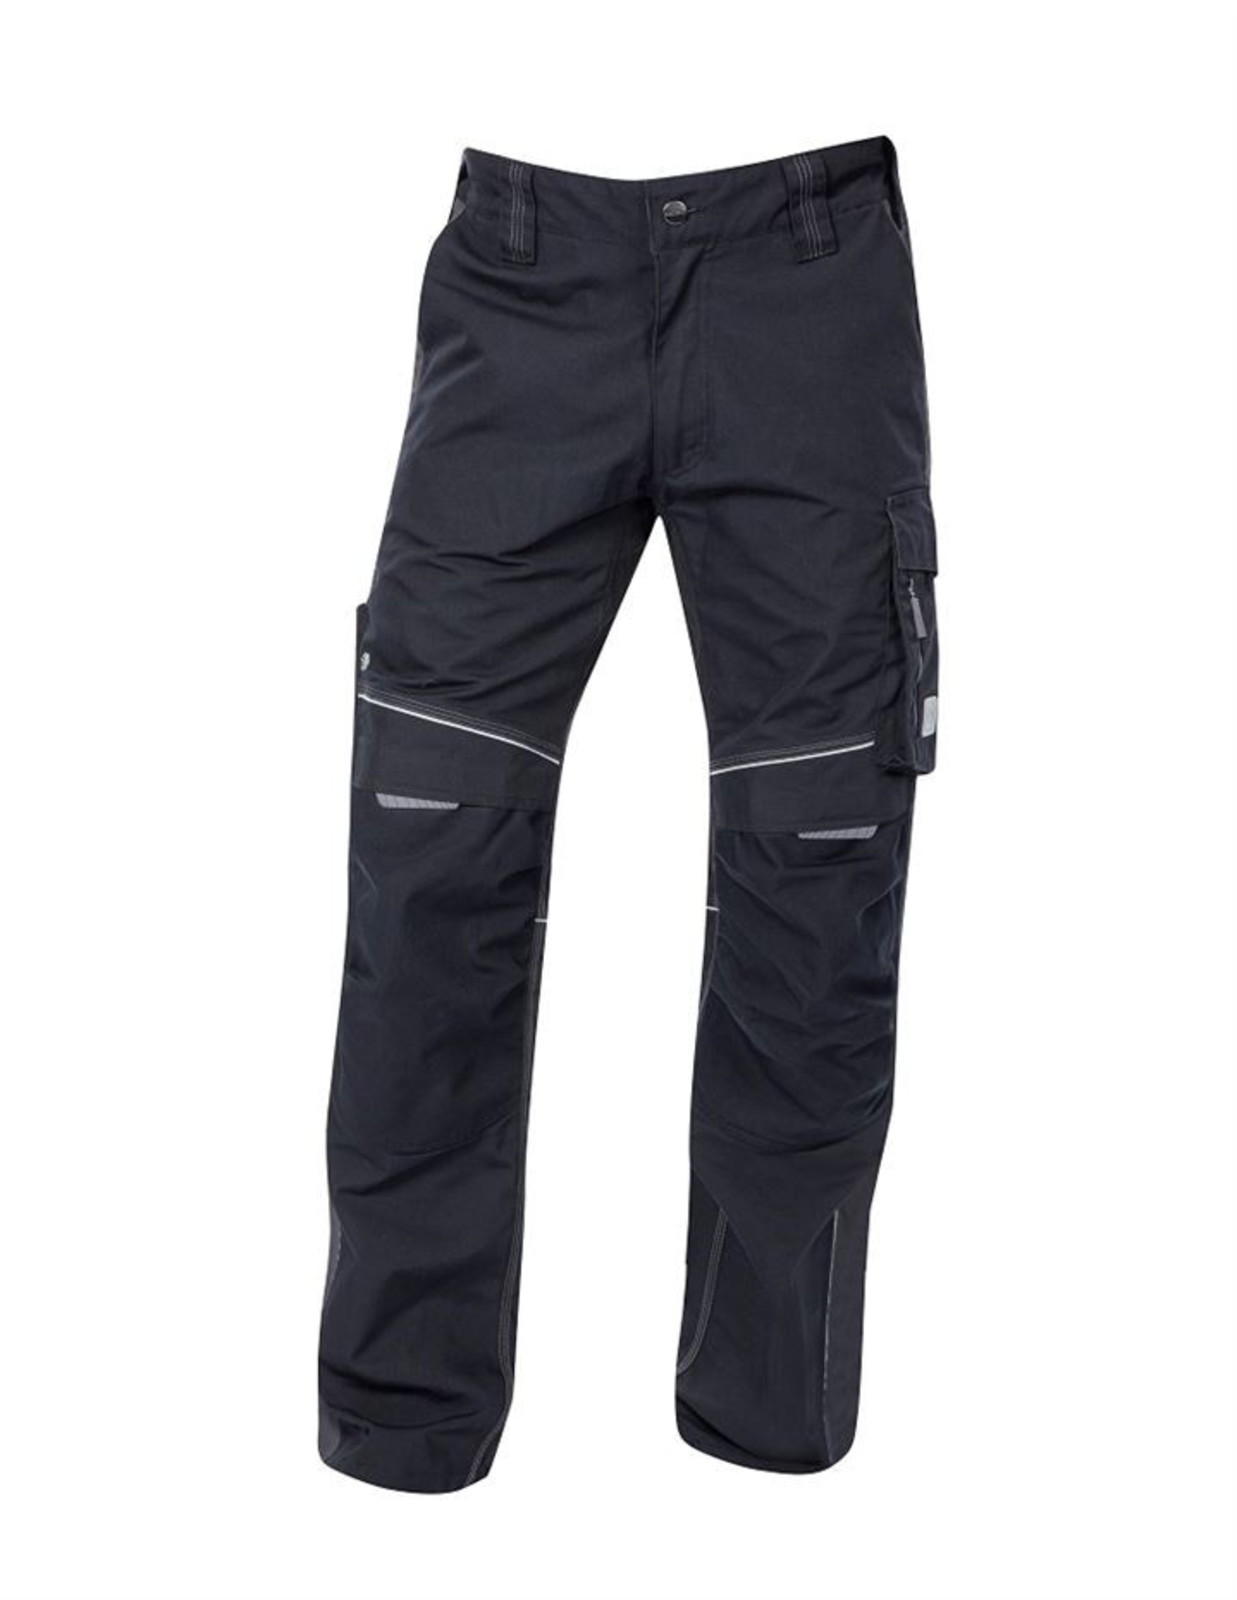 Pánske montérkové nohavice Ardon Urban+ - veľkosť: 64, farba: čierna/sivá